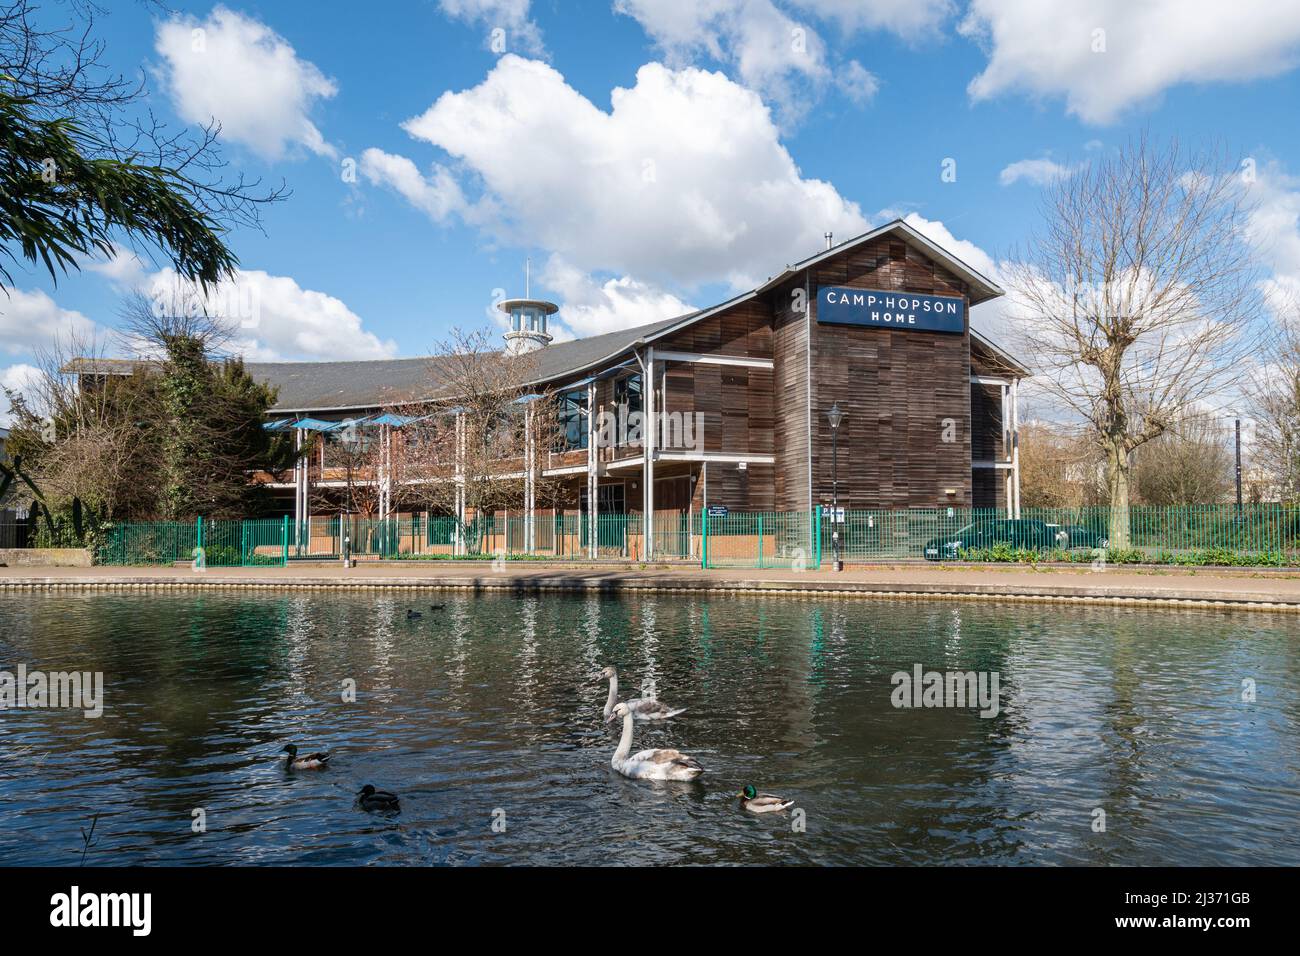 Swans sur le canal Kennet et Avon à Newbury avec Camp Hopson Home magasin de meubles, Berkshire, Angleterre, Royaume-Uni Banque D'Images